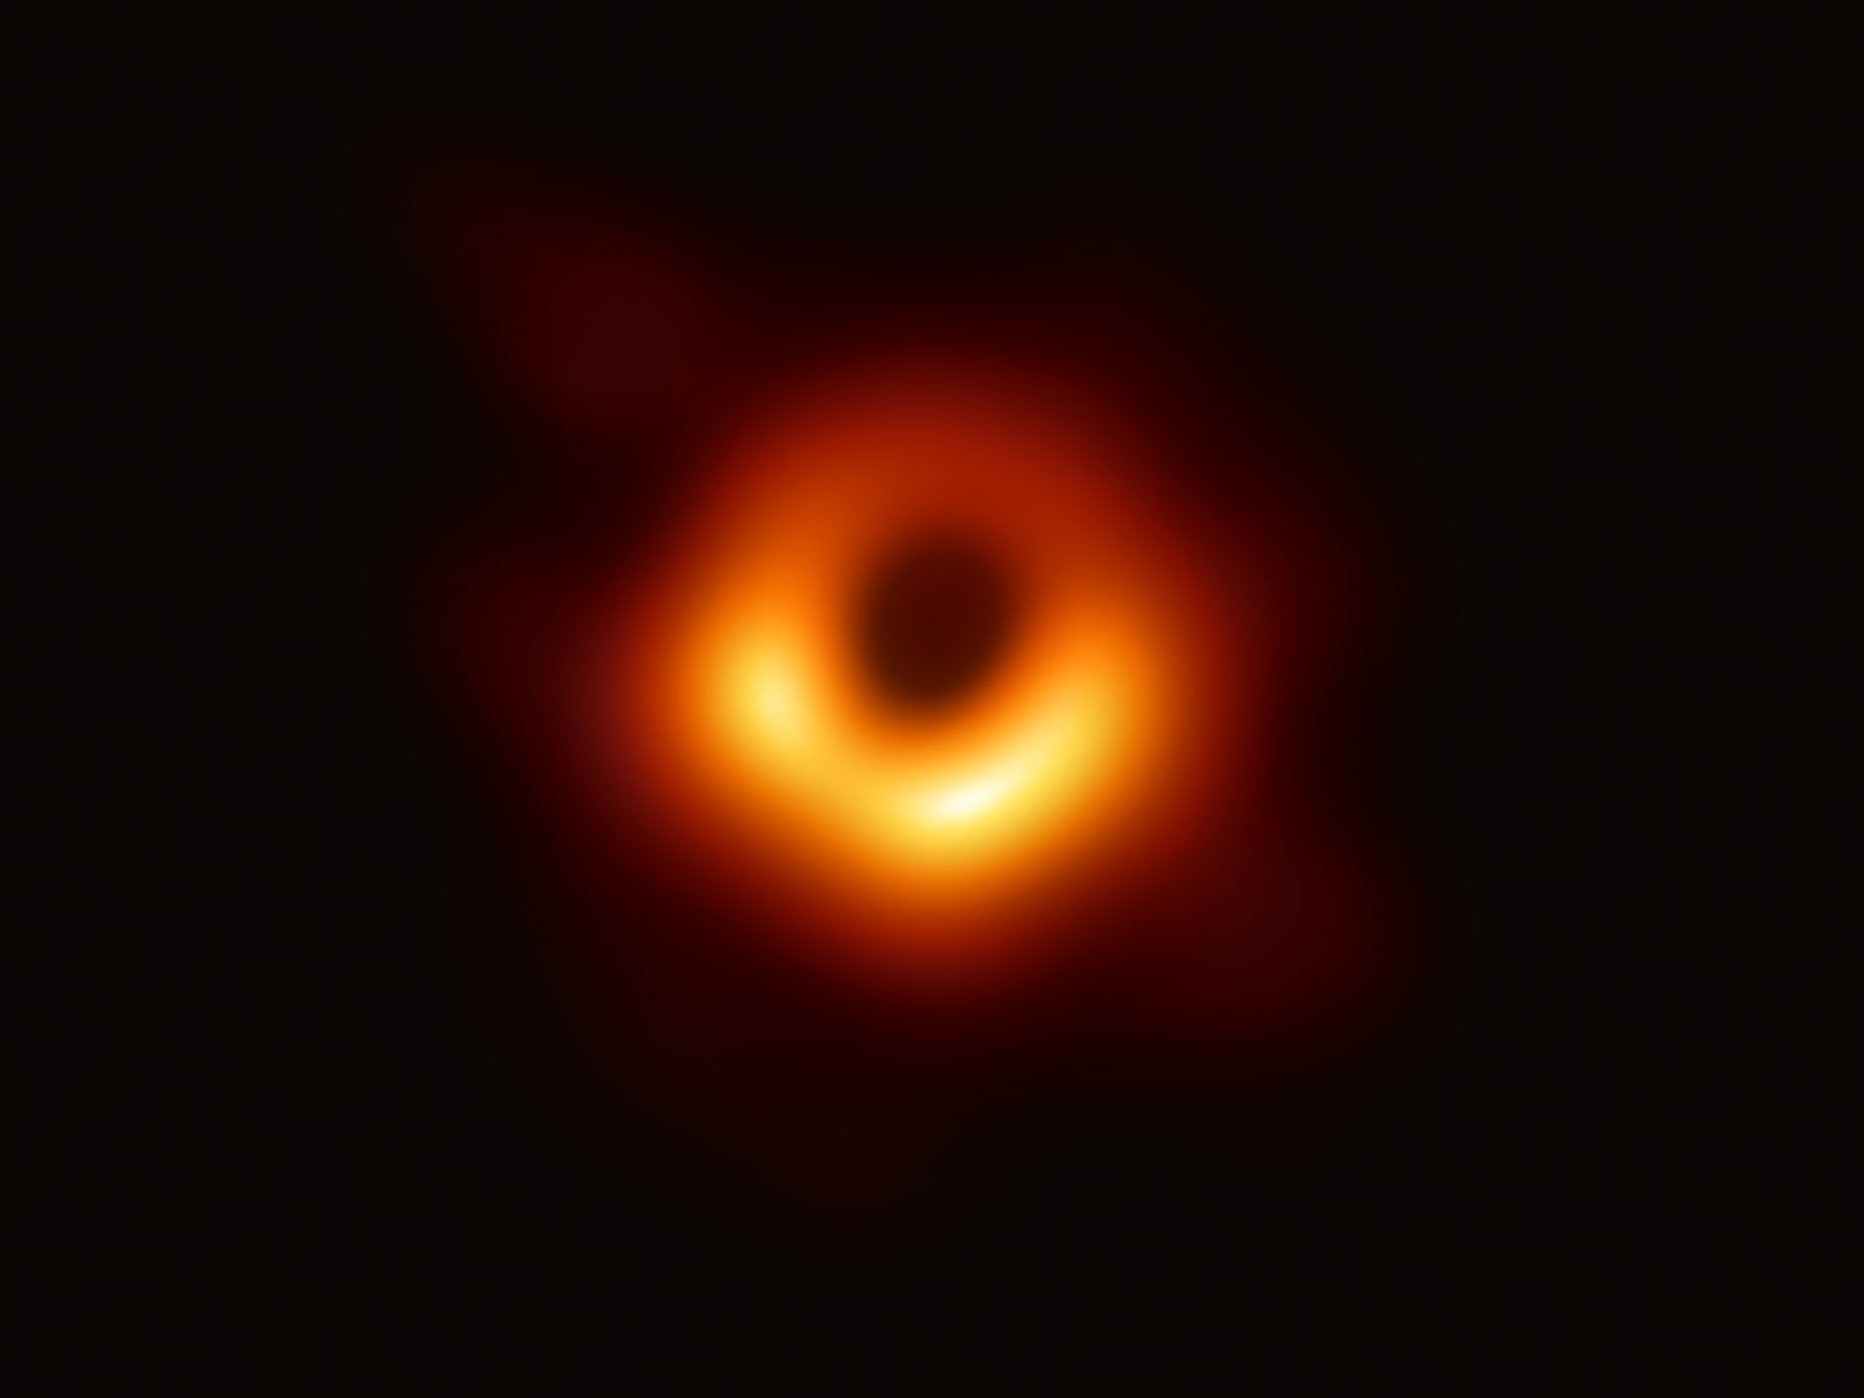 ilk kara delik fotoğrafı